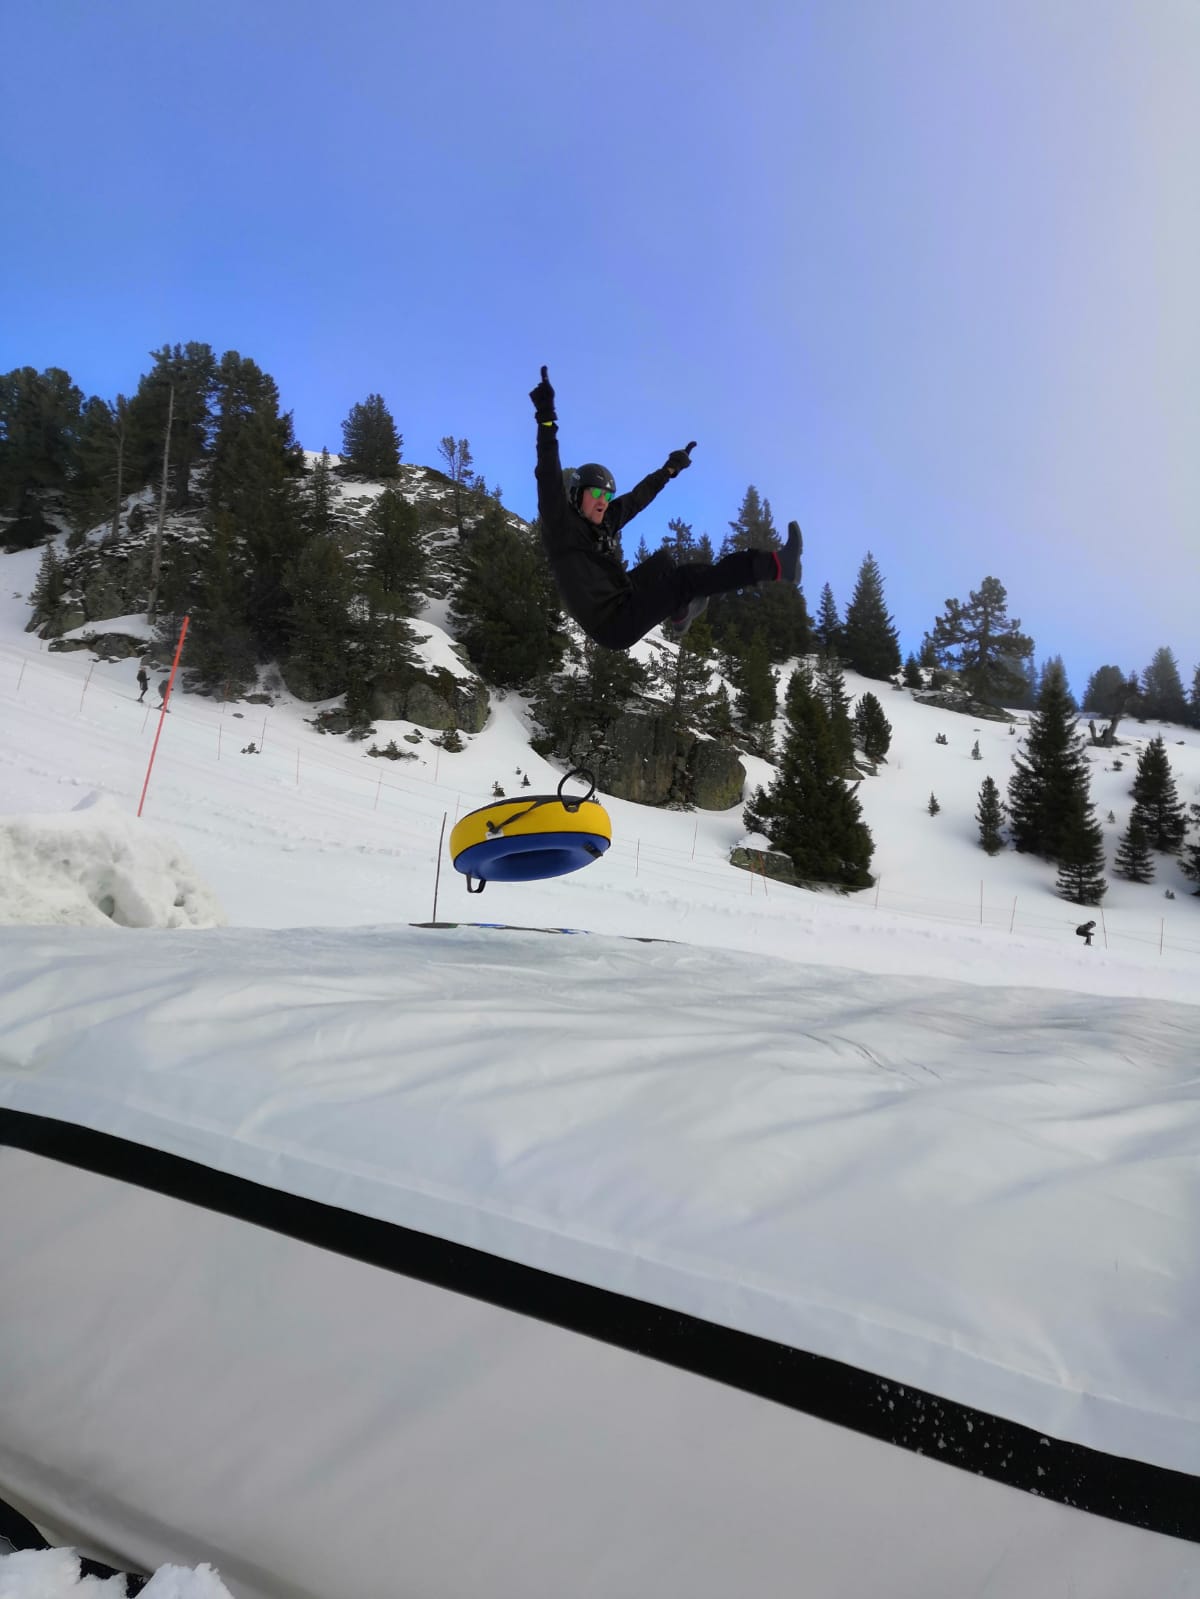 Chamrousse blog experience snowtubing tube park bag jump mountain ski resort isere french alps france - © EM - OT Chamrousse